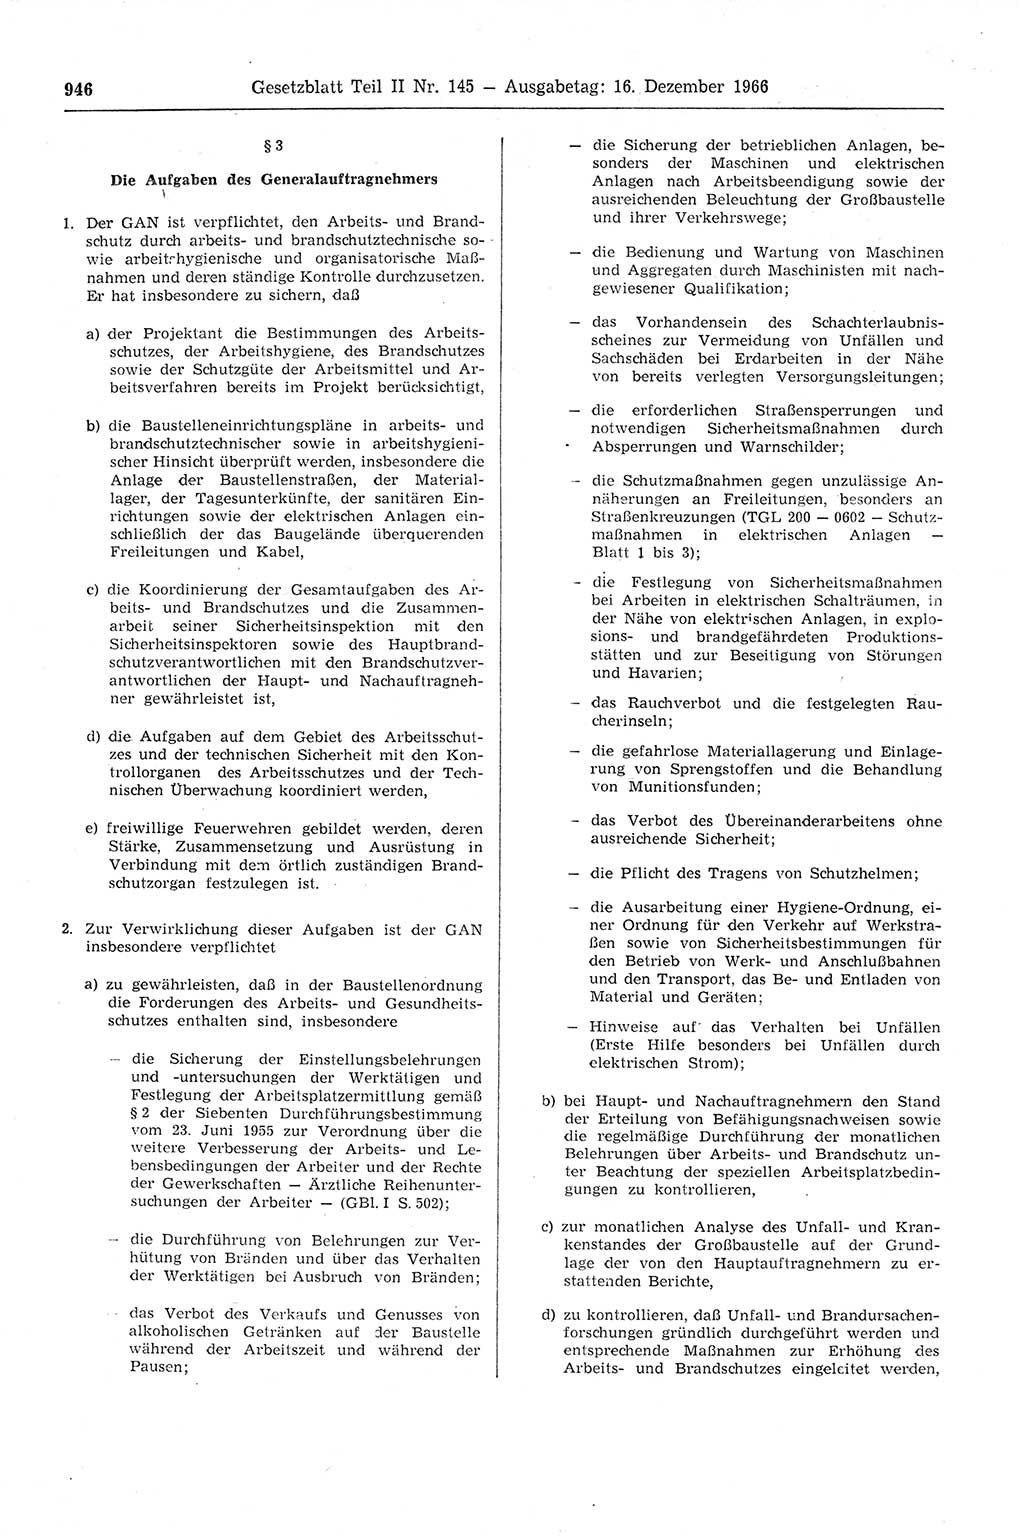 Gesetzblatt (GBl.) der Deutschen Demokratischen Republik (DDR) Teil ⅠⅠ 1966, Seite 946 (GBl. DDR ⅠⅠ 1966, S. 946)